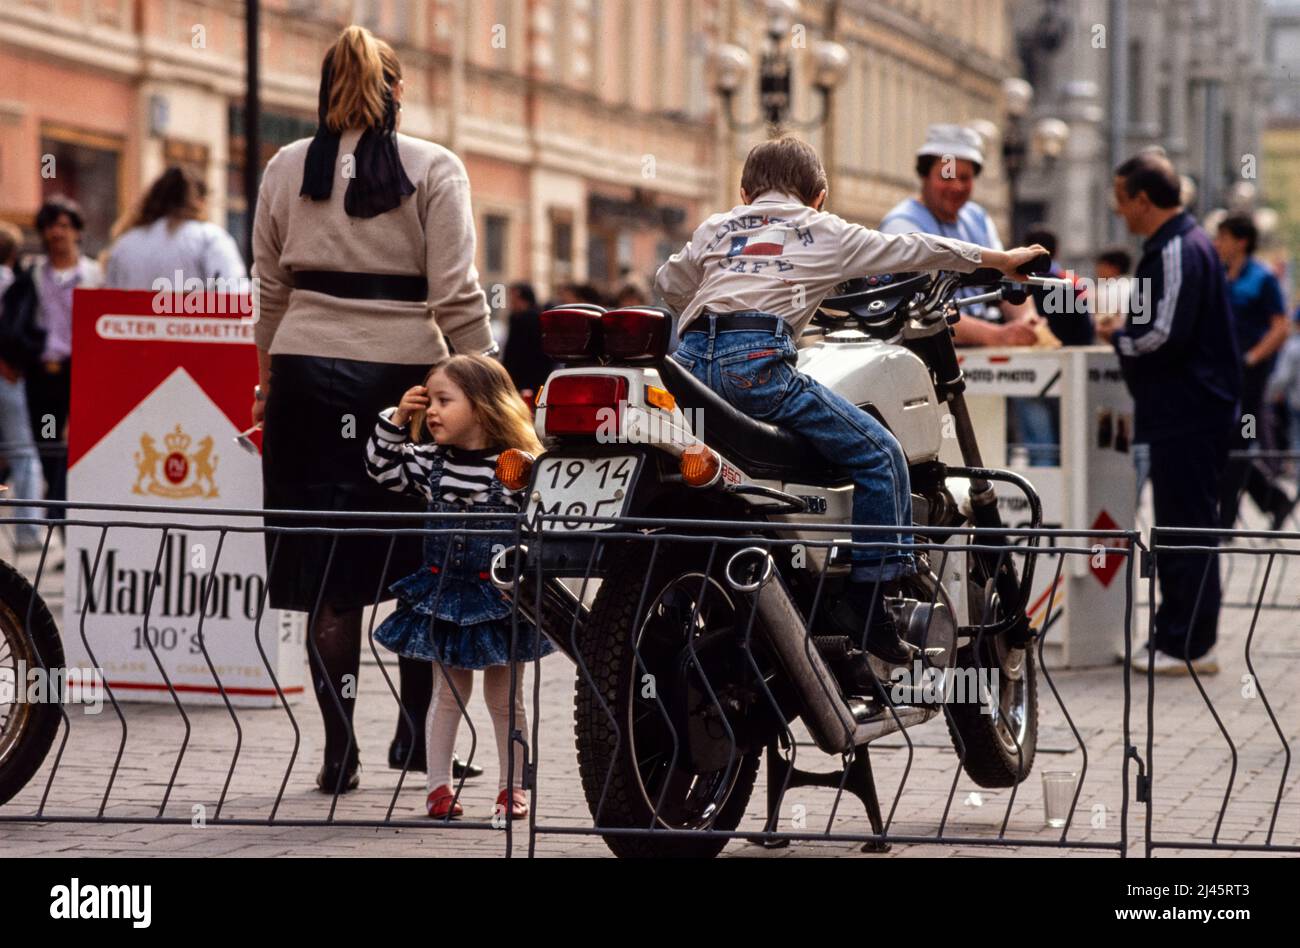 Un giovane ragazzo gioca su una moto parcheggiata in strada, Mosca, Russia, maggio 1990. Foto Stock